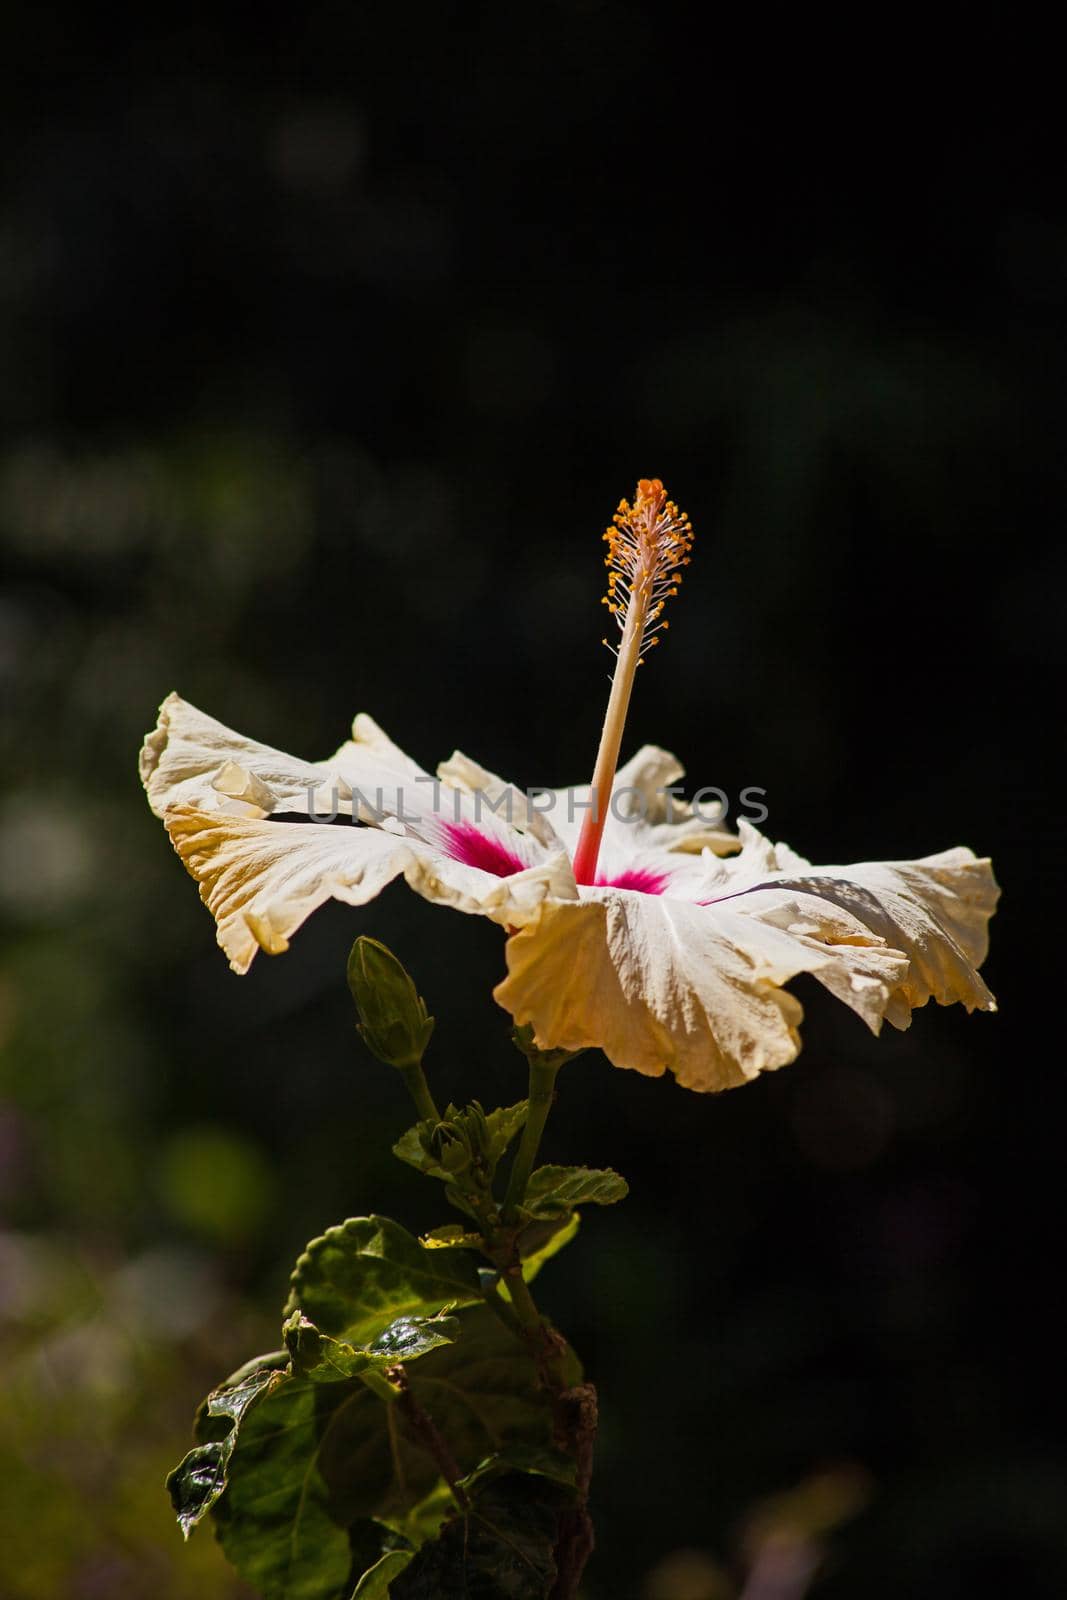 Hibiscus Flower 14687 by kobus_peche